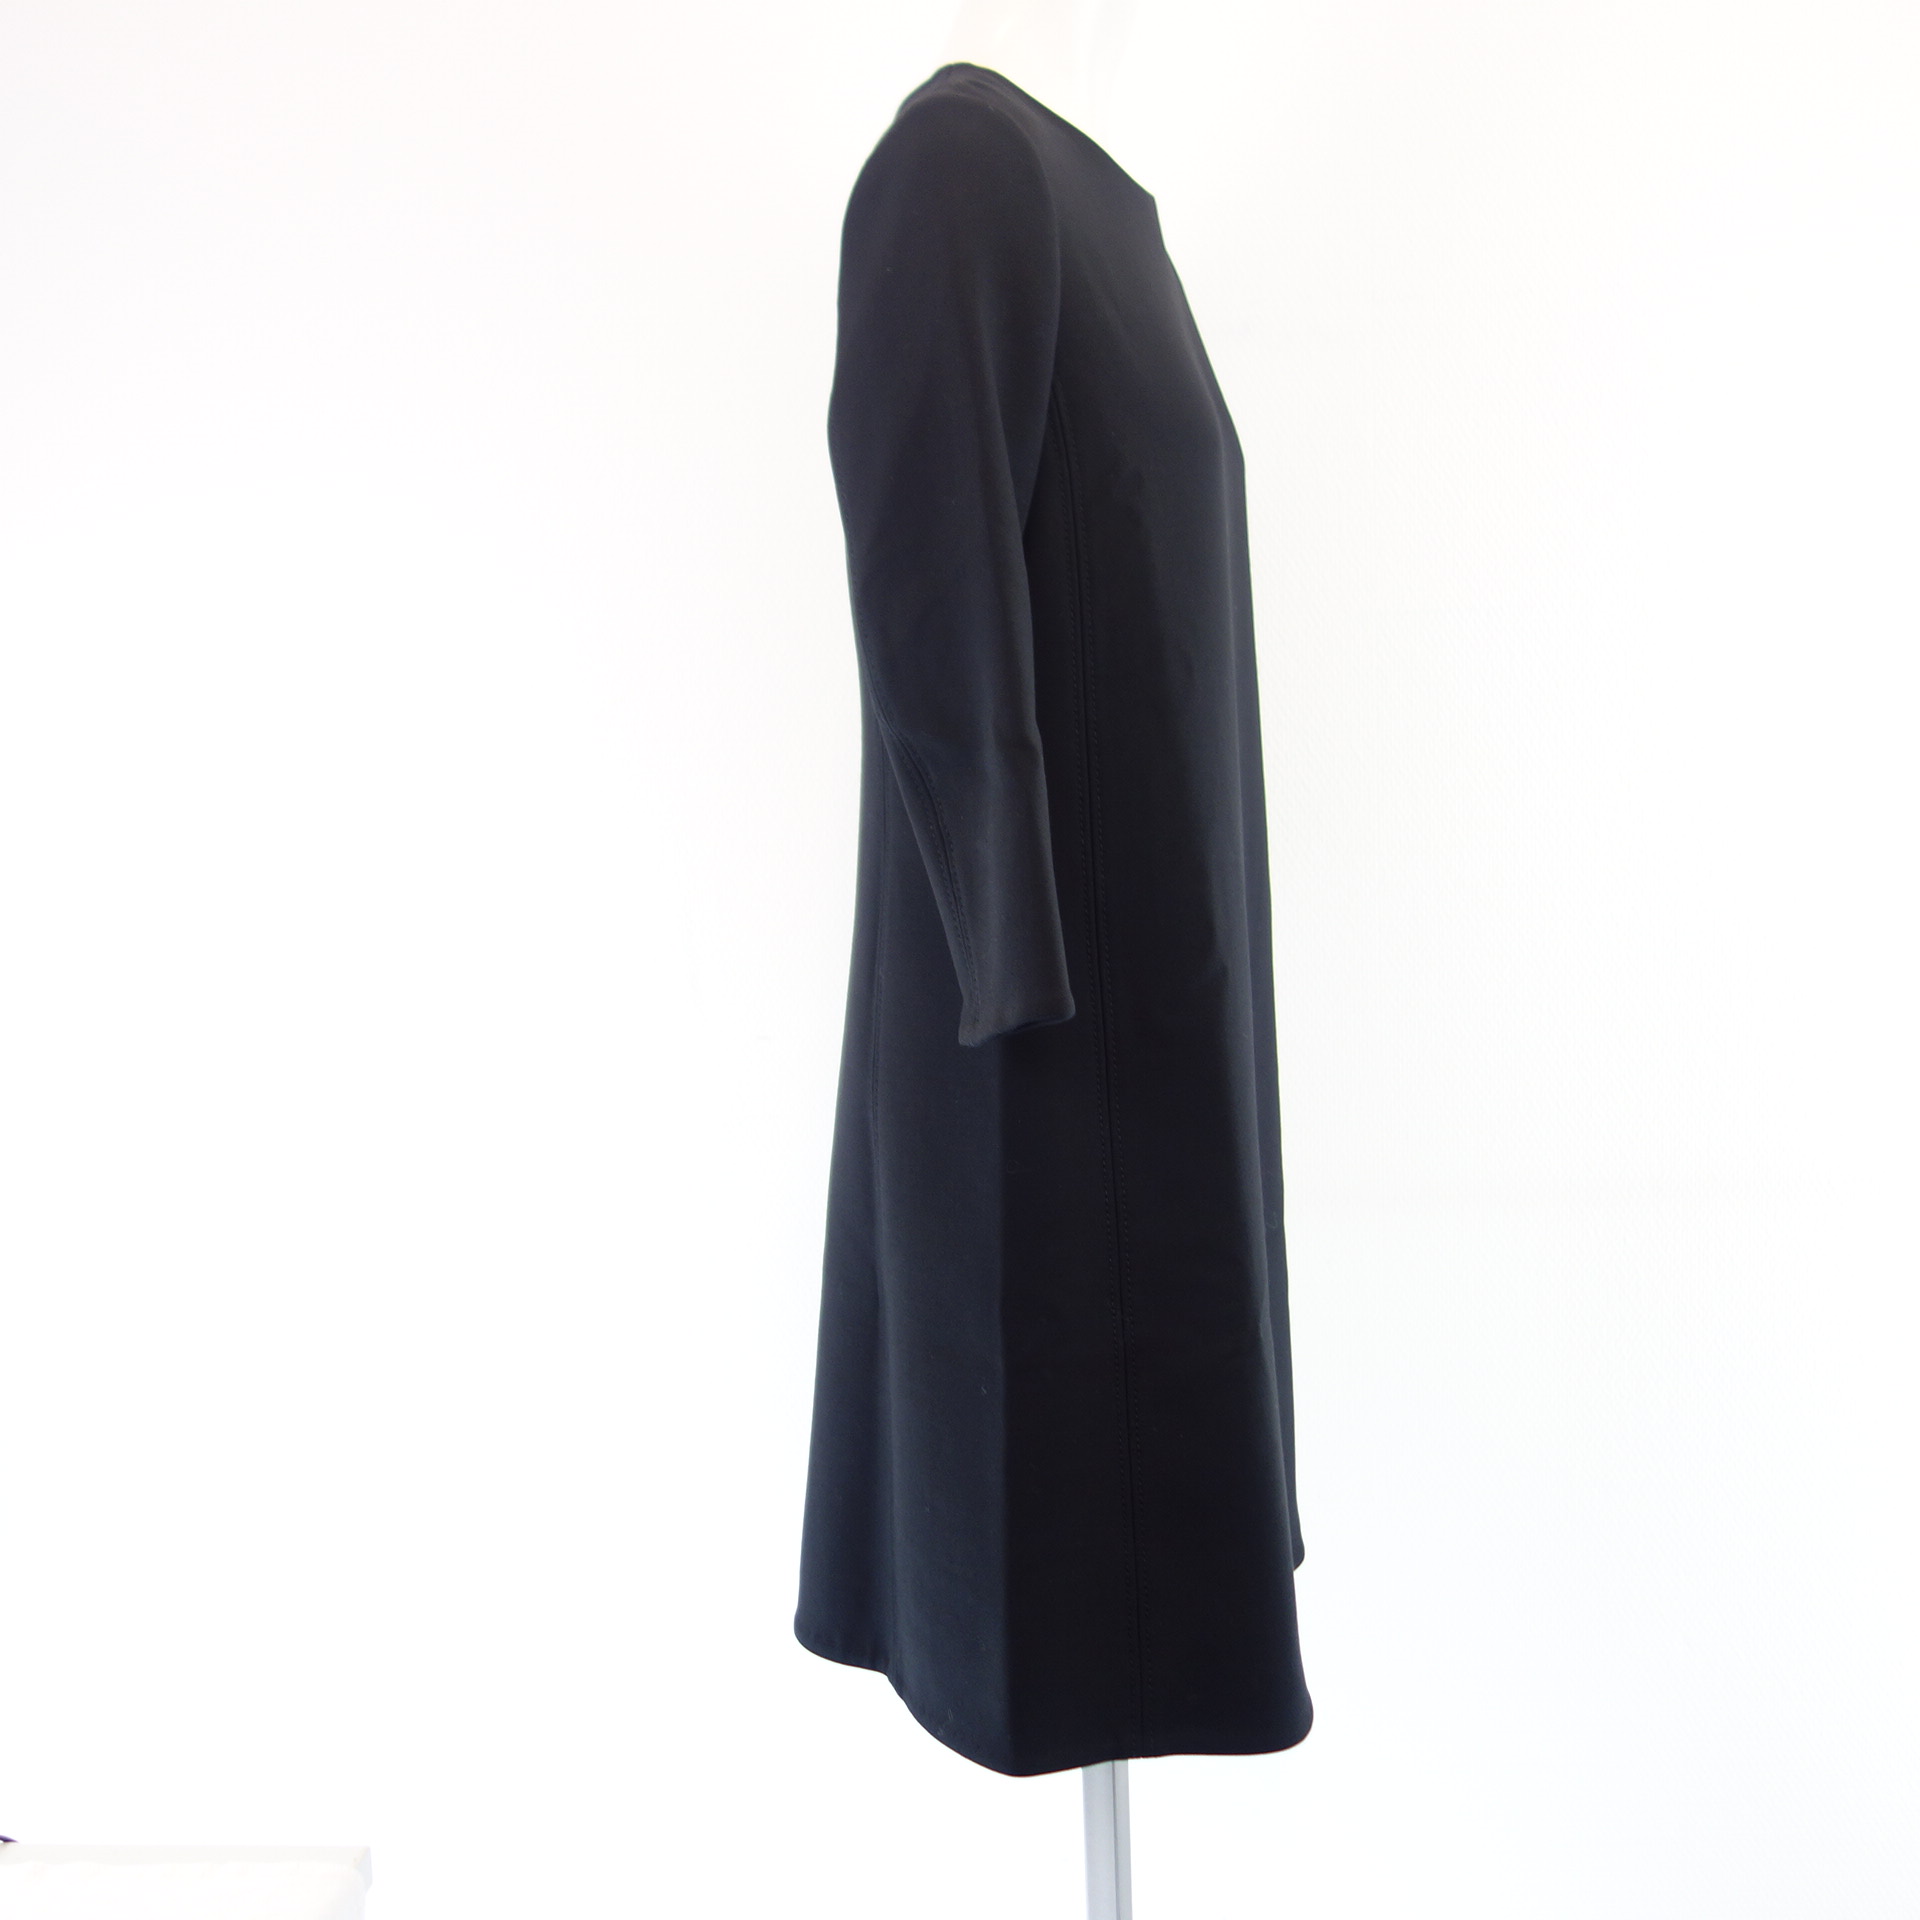 DOROTHEE SCHUMACHER Damen Kleid Etuikleid Abendkleid Schwarz Gr 3 ( 38 ) 